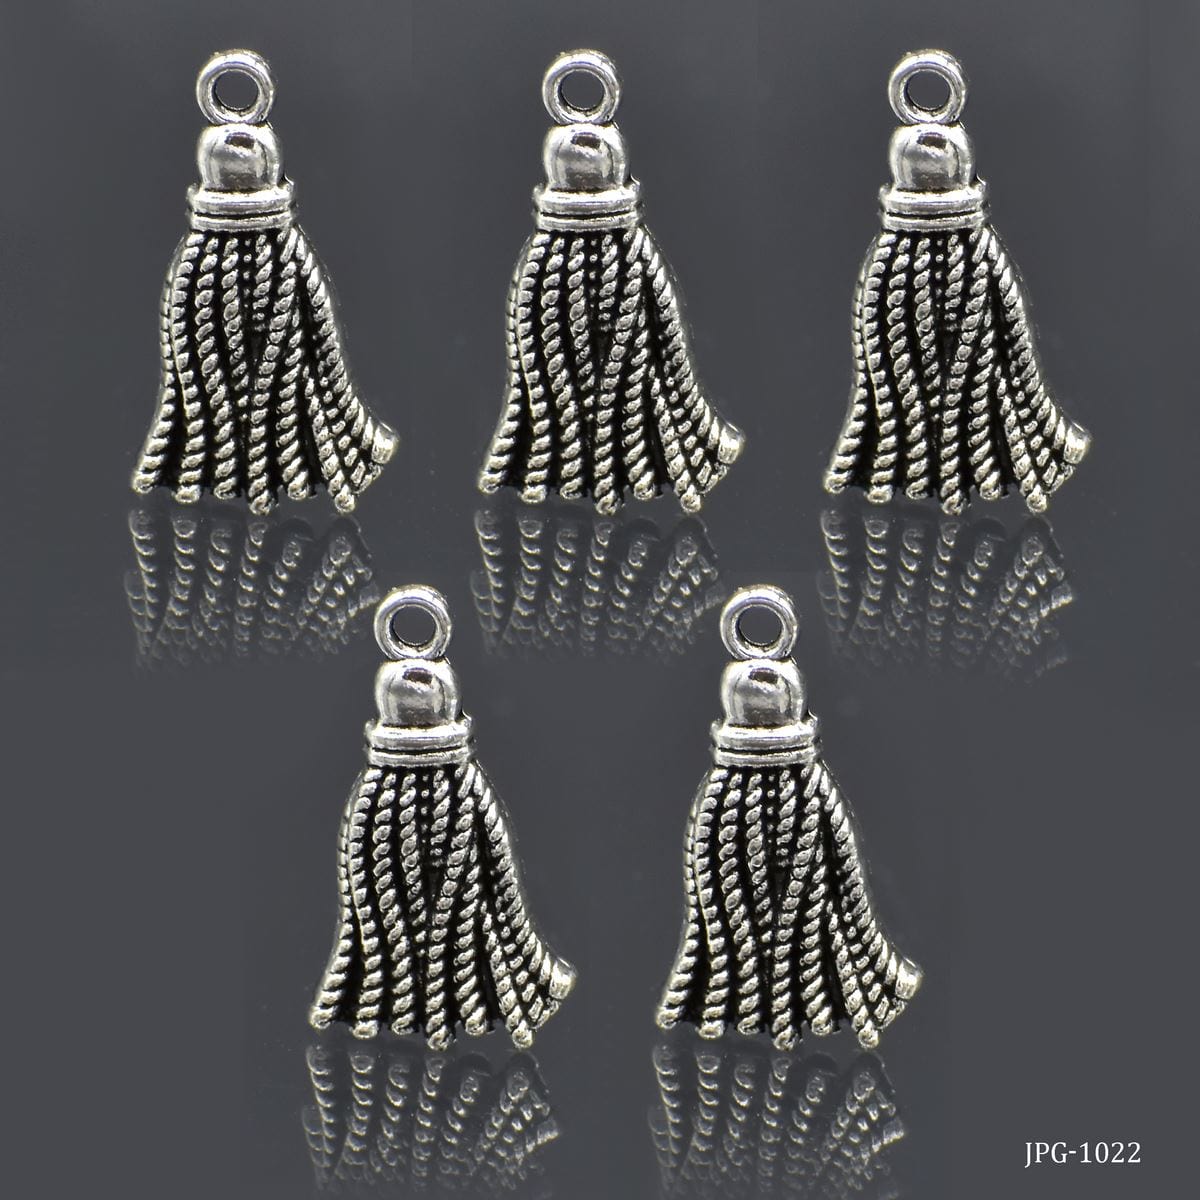 jags-mumbai Jewellery Metal Craft Fittings Silver 10 Pcs